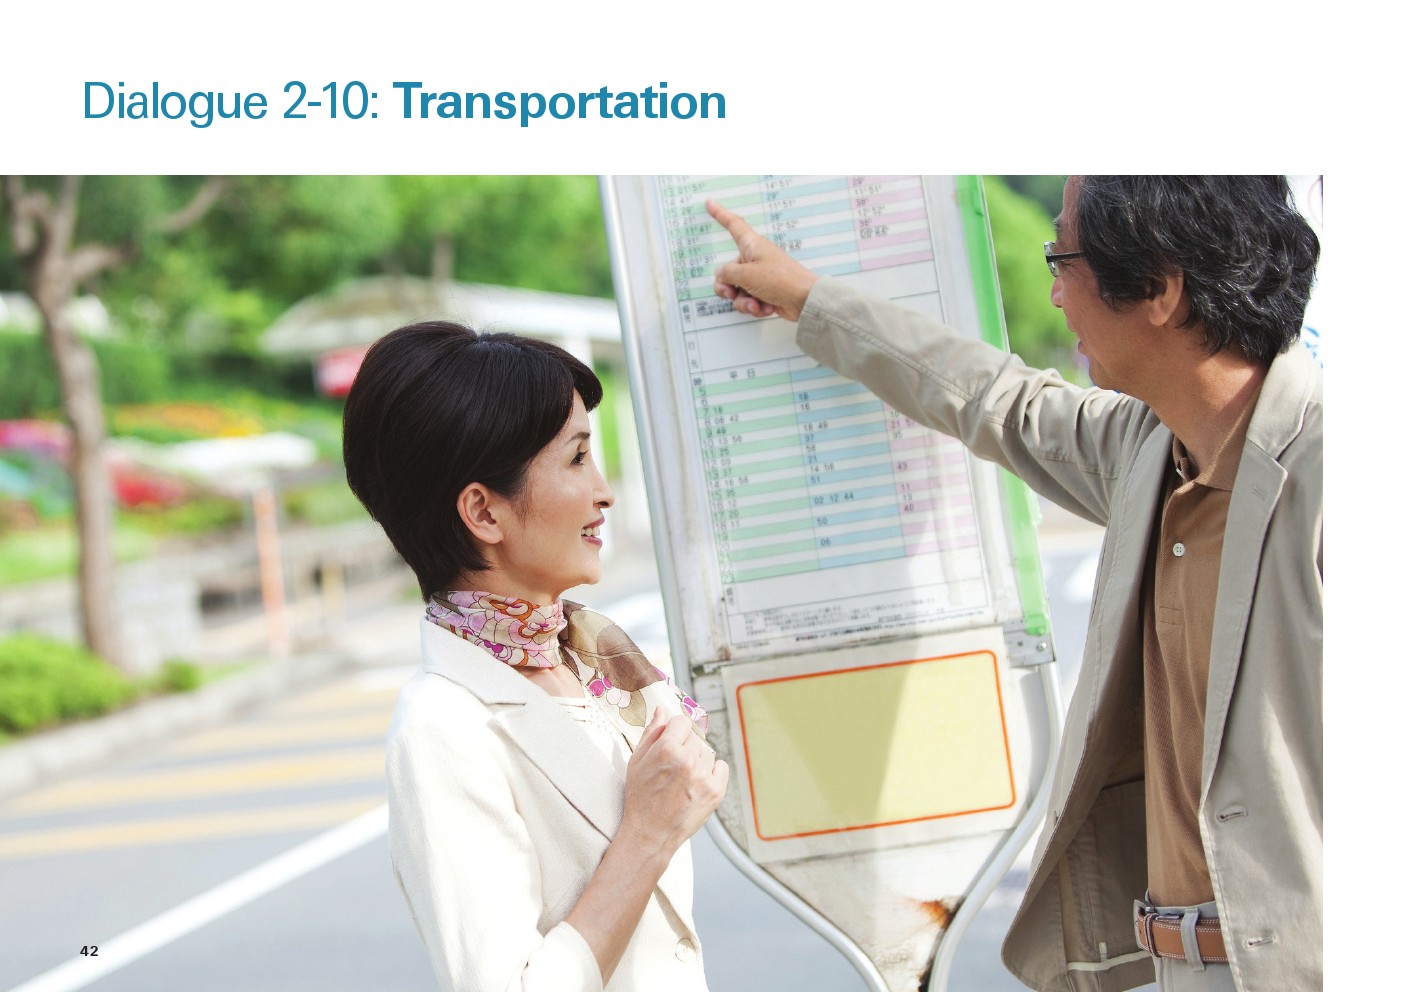 یادگیری انگلیسی آمریکایی-مکالمات و دیالوگ های روزمره- مکالمه 10-2: حمل و نقل(Dialogue 2-10: Transportation)